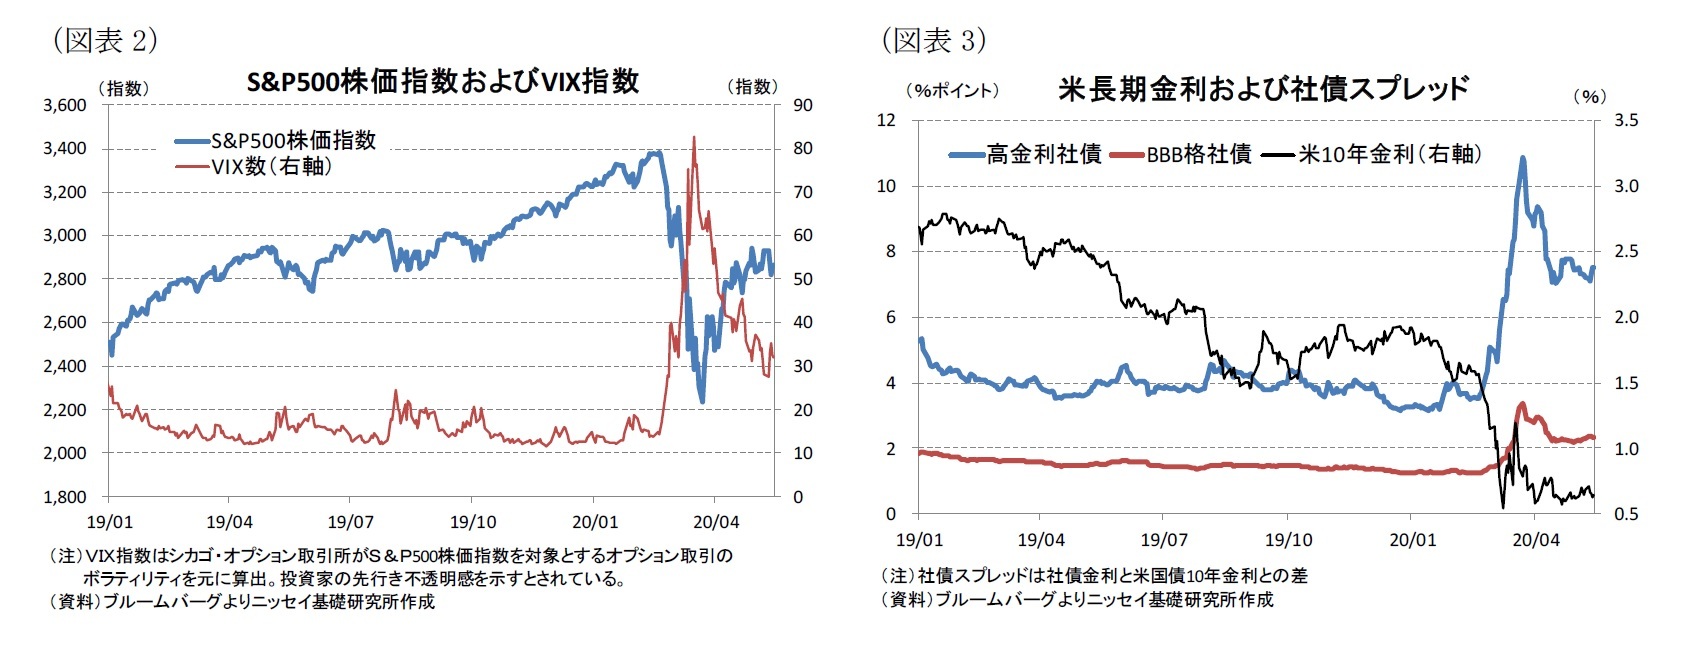 （図表2）S&P500株価指数およびVIX指数/（図表3）米長期金利および社債スプレッド